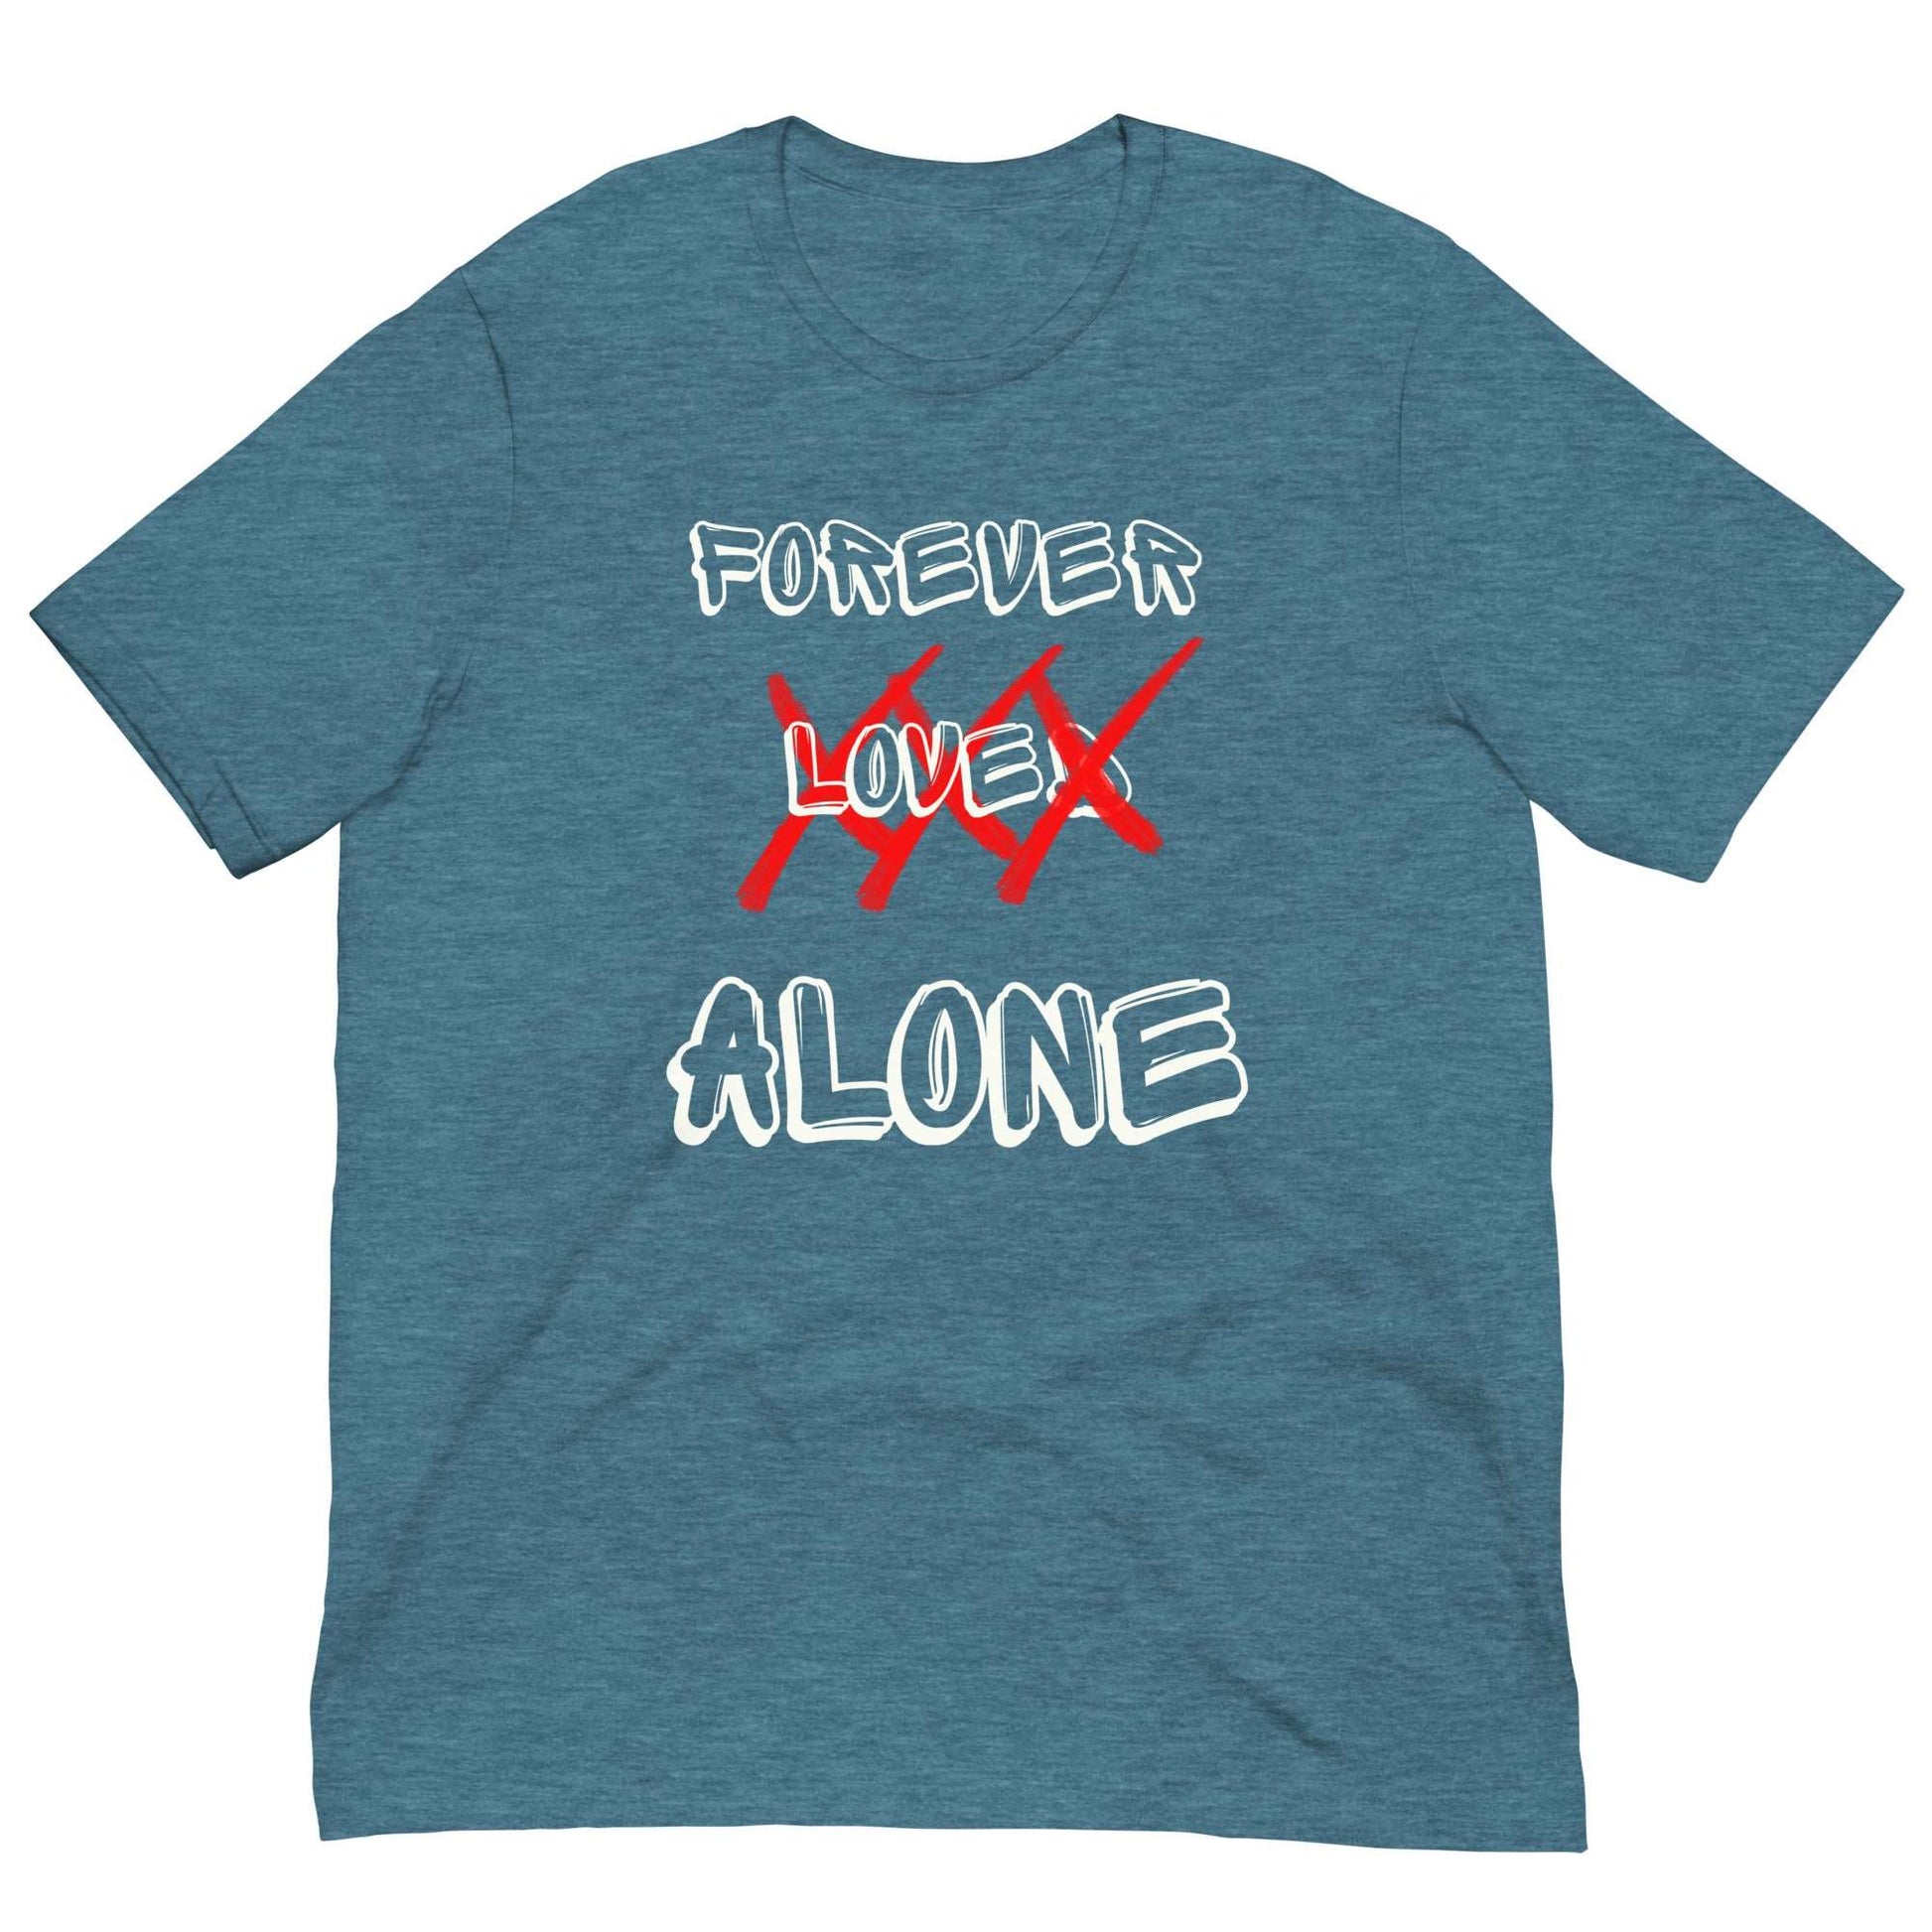 FOREVER LOVED - Unisex t-shirt